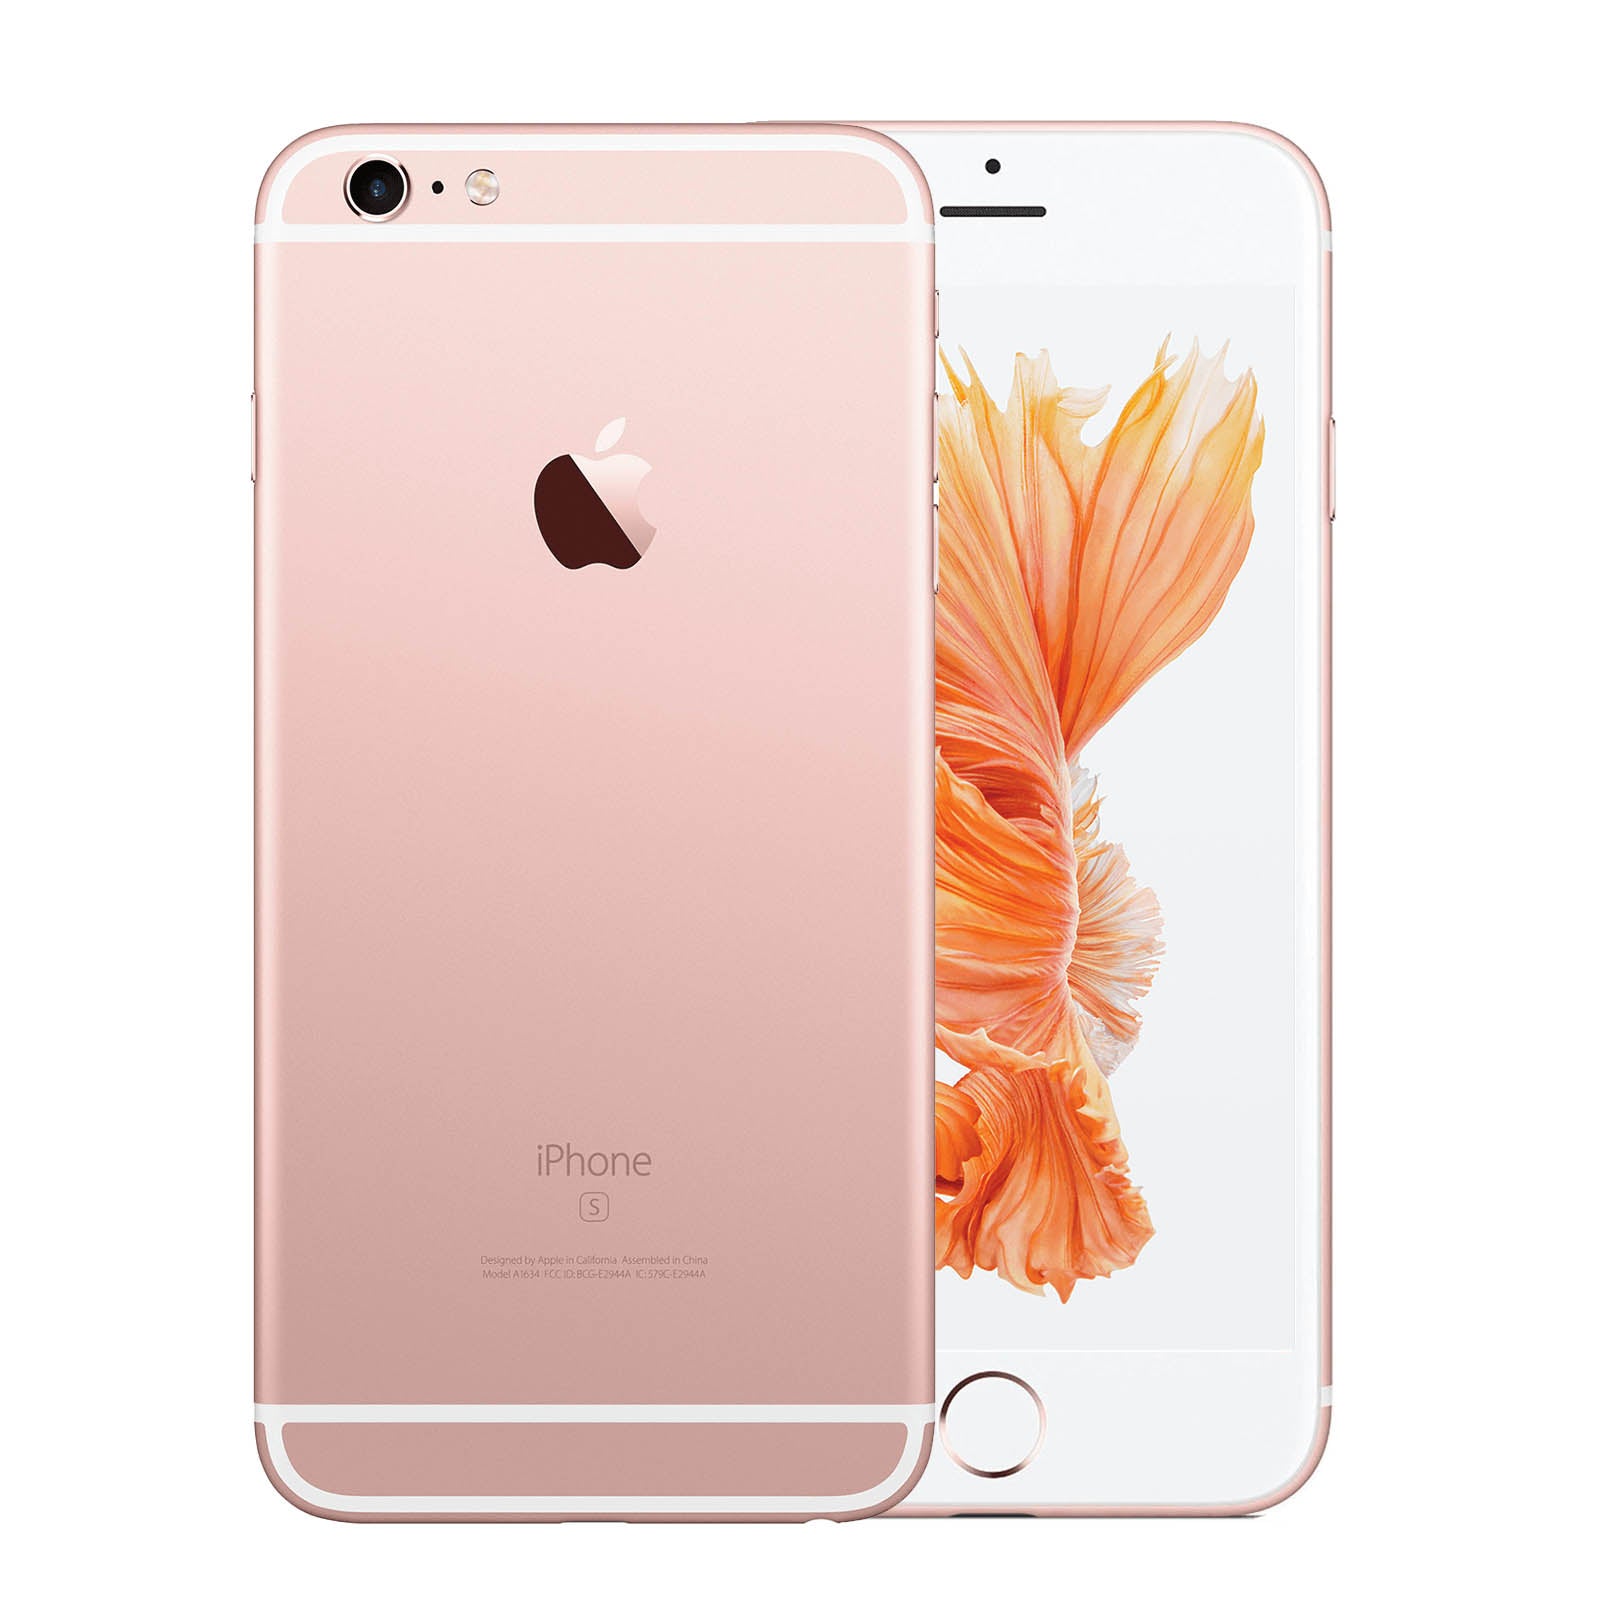 Apple iPhone 6S Plus 32GB Rose Gold Fair - Unlocked